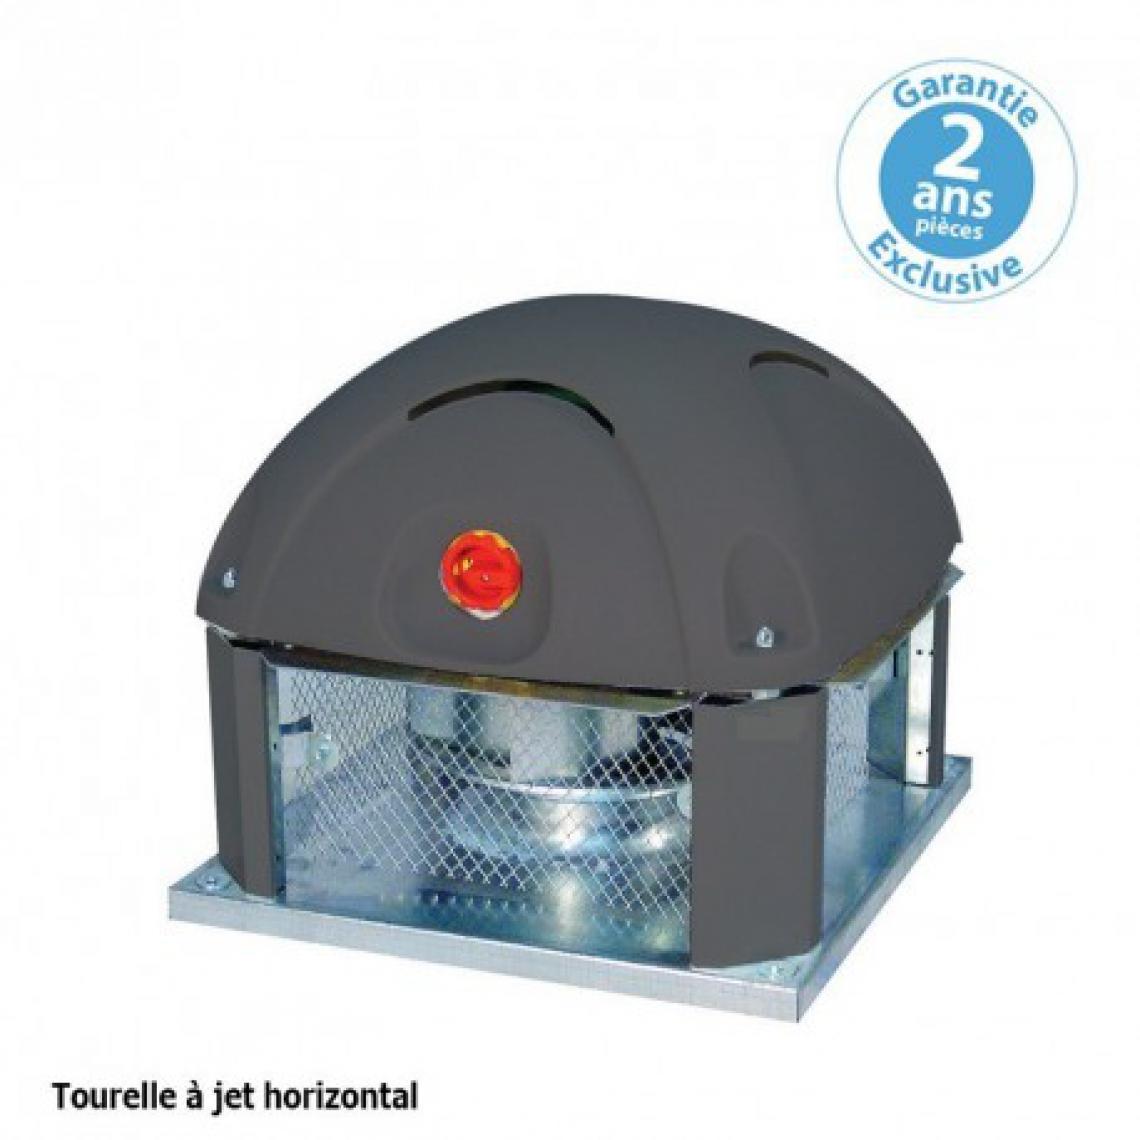 Furnotel - Tourelle 1 vitesse - triphasée - refoulement horizontal - 3000 m³ / h sous 190 Pa - - VMC, Ventilation